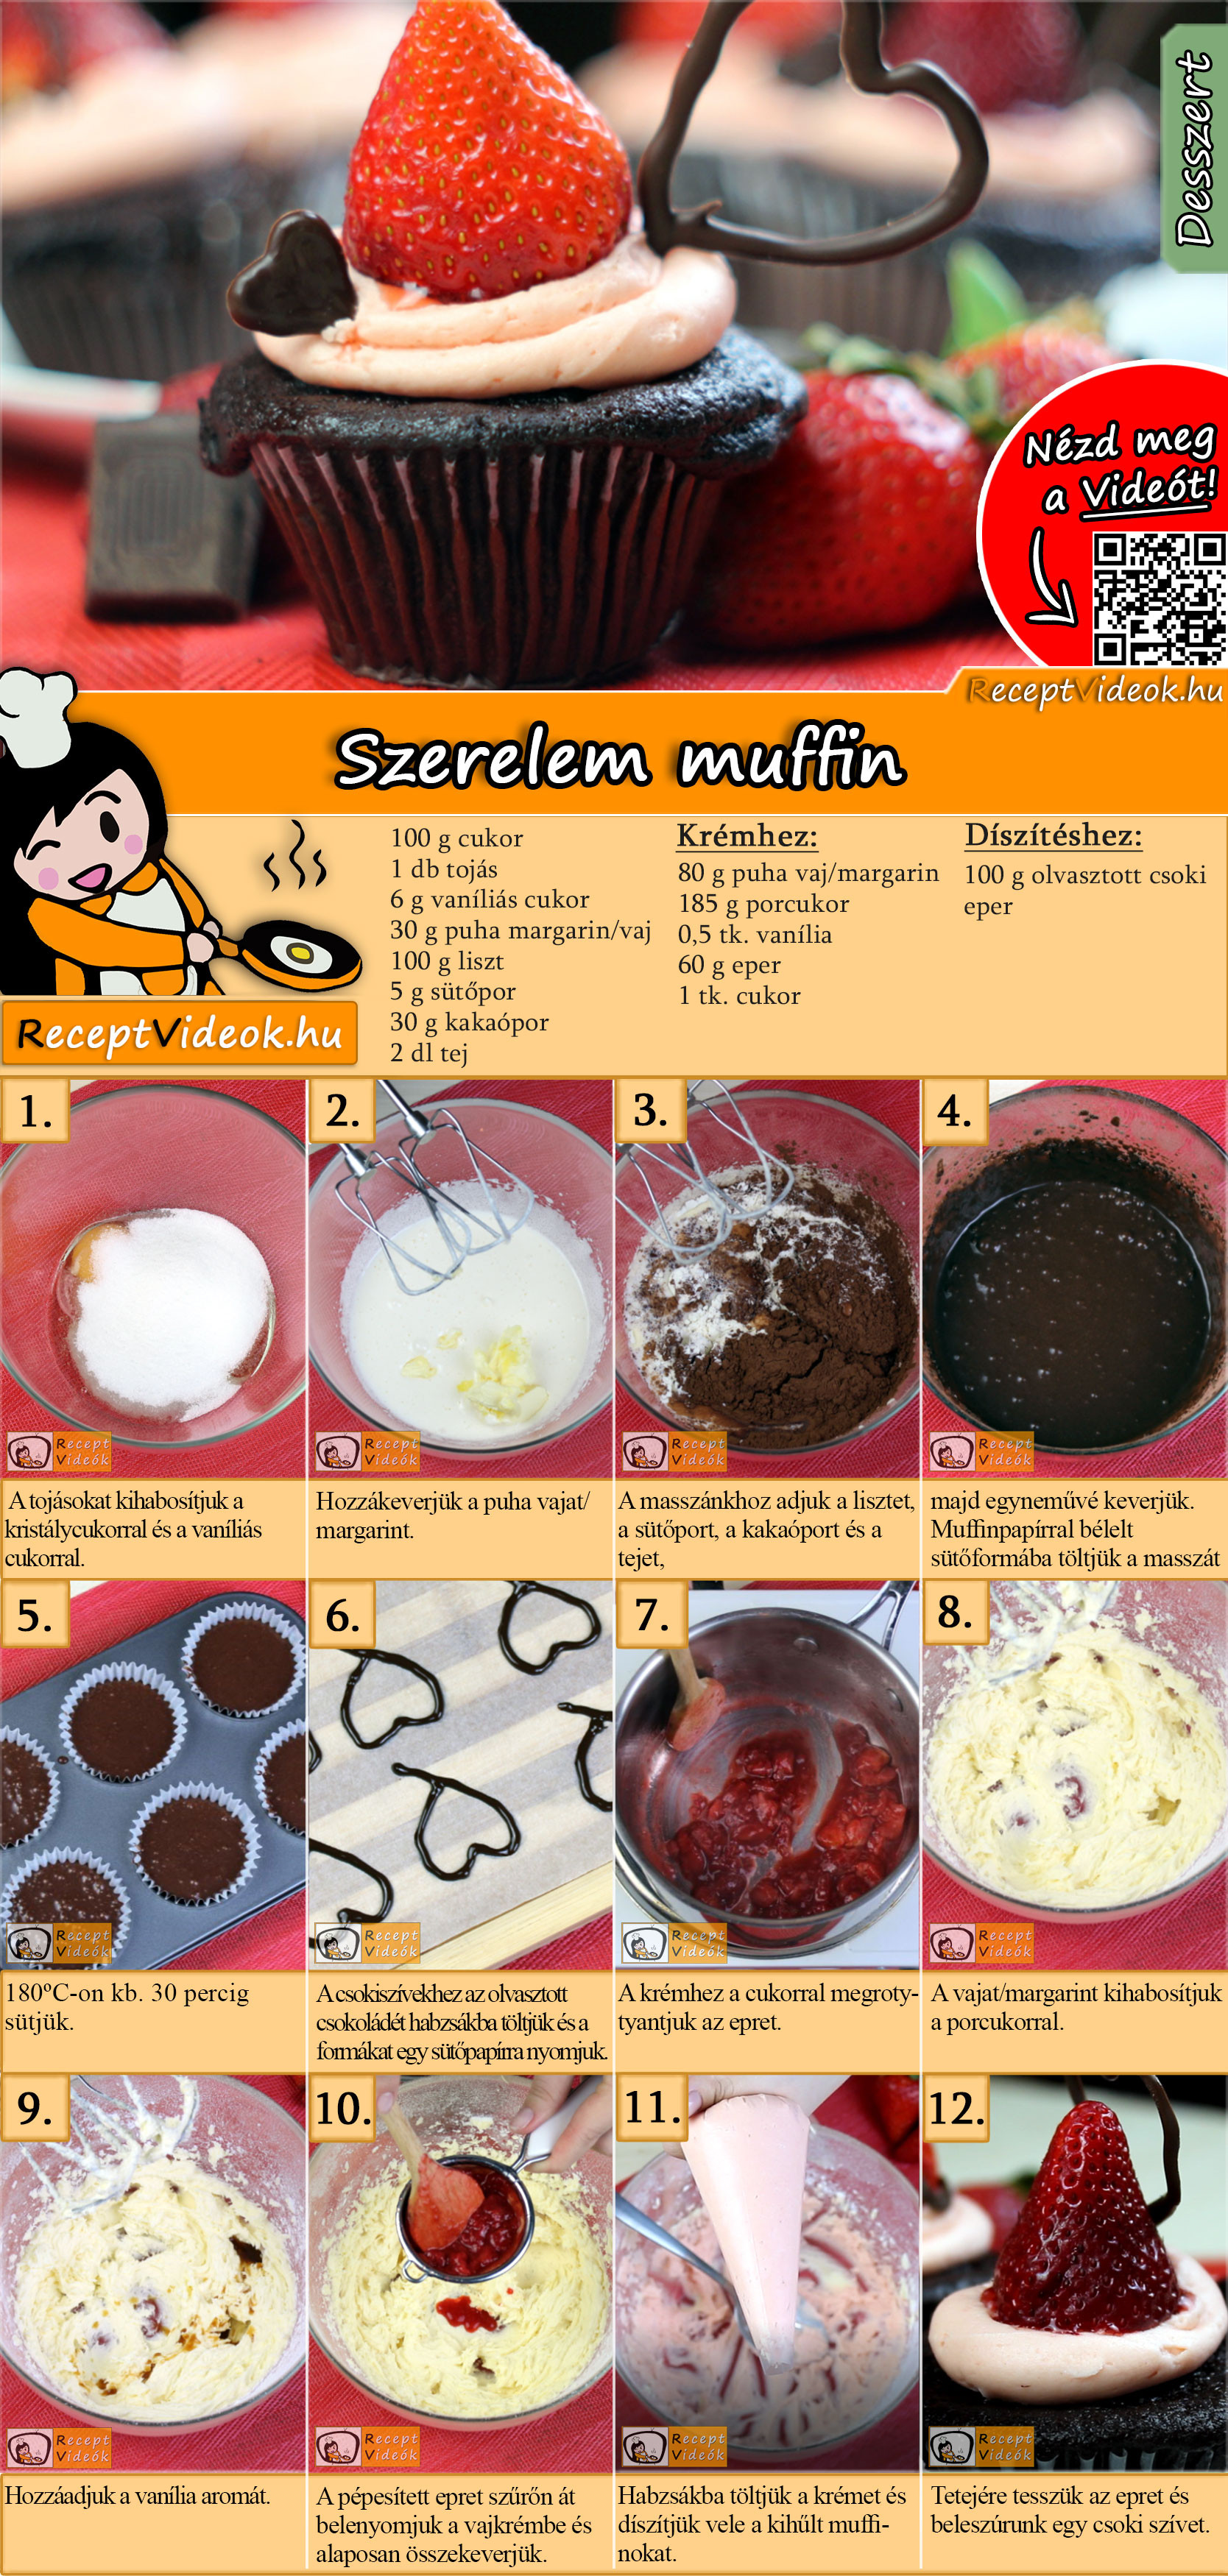 Szerelem muffin recept elkészítése videóval